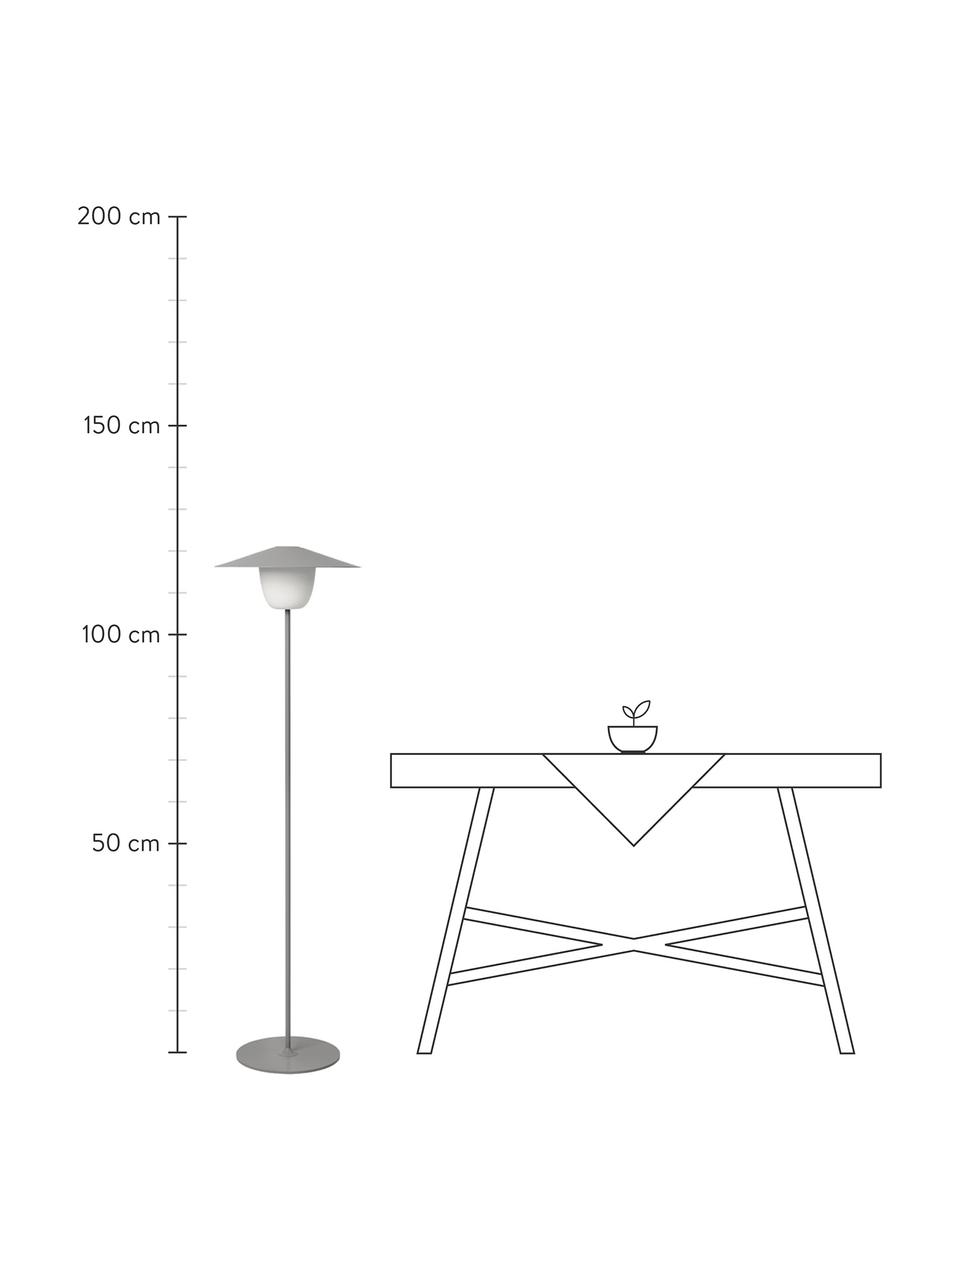 Lampe d'extérieur LED mobile à suspendre ou à poser Ani, Gris, blanc, Ø 34 x haut. 121 cm